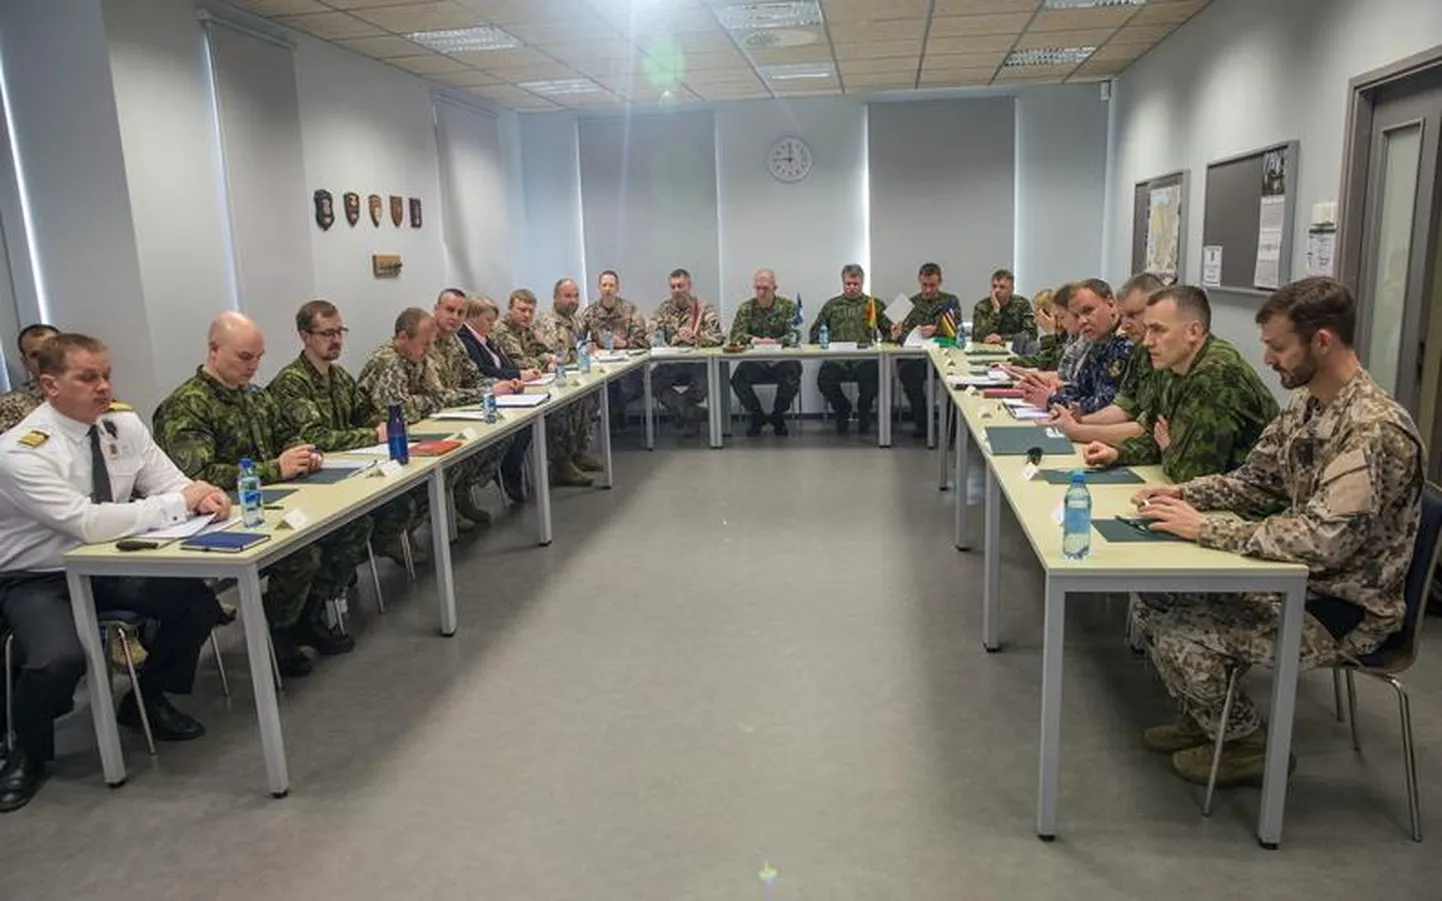 Täna lõppes kahepäevane Balti riikide kaitseväe juhatajate kohtumine Ida-Virumaal, kus kaitseväe juhatajad arutasid regionaalset julgeolekuolukorda, tegevuste koordineerimist, omavahelist koostööd ja edasisi arengusuundi.